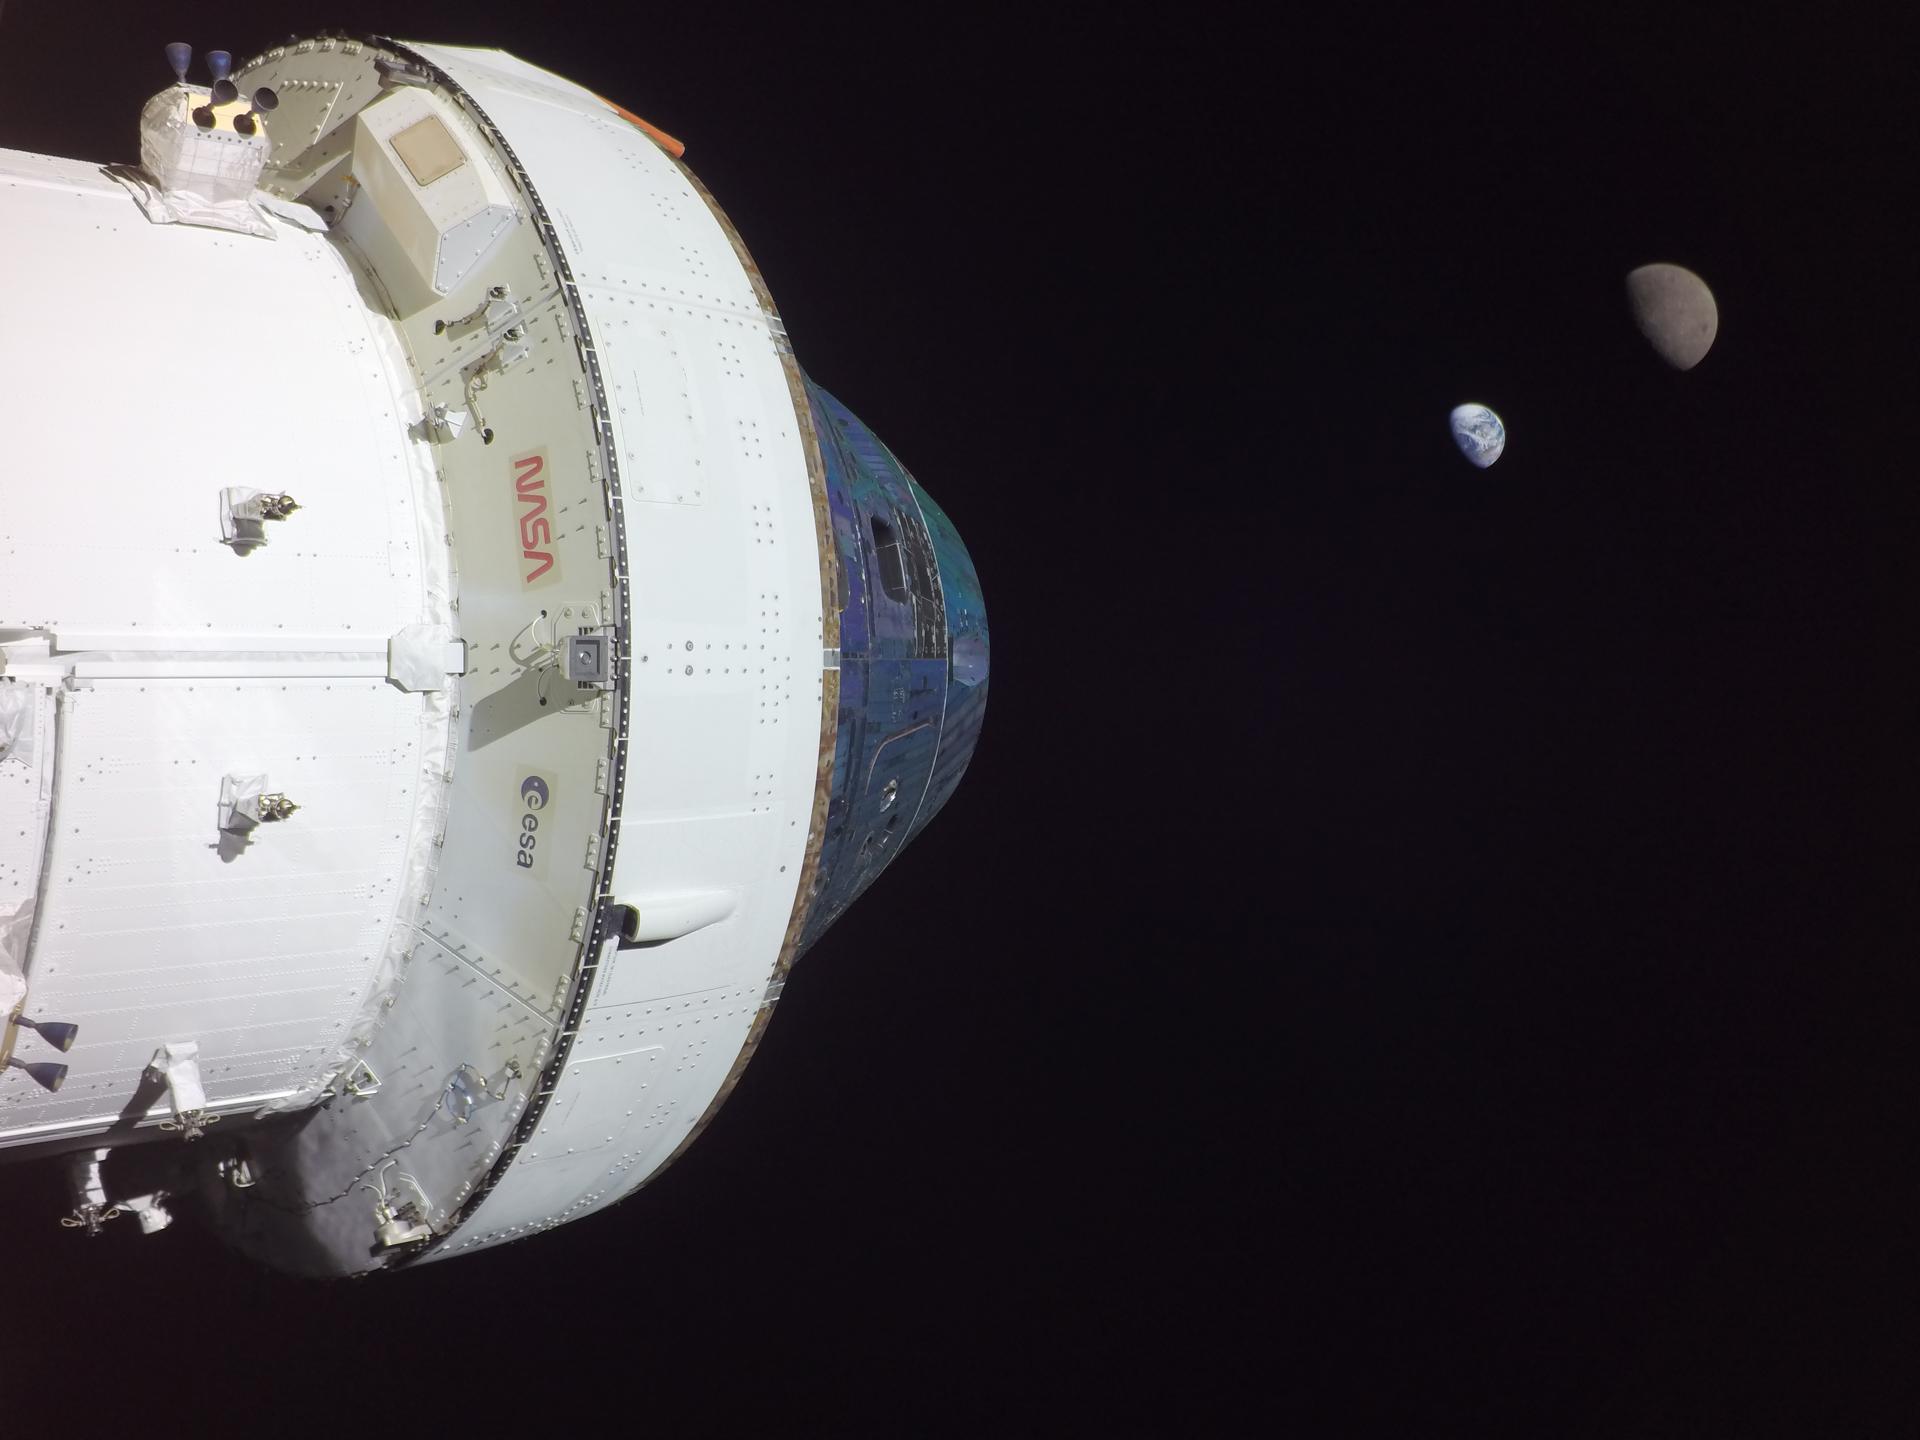 Fotografía cedida por la ESA que muestra a la cápsula Orión de la misión no tripulada Artemis I al momento de alcanzar una distancia de 432.210 kilómetros (268.563 millas) y al fondo la luna y la tierra. EFE/ESA /SOLO USO EDITORIAL /NO VENTAS /SOLO DISPONIBLE PARA ILUSTRAR LA NOTICIA QUE ACOMPAÑA /CRÉDITO OBLIGATORIO
